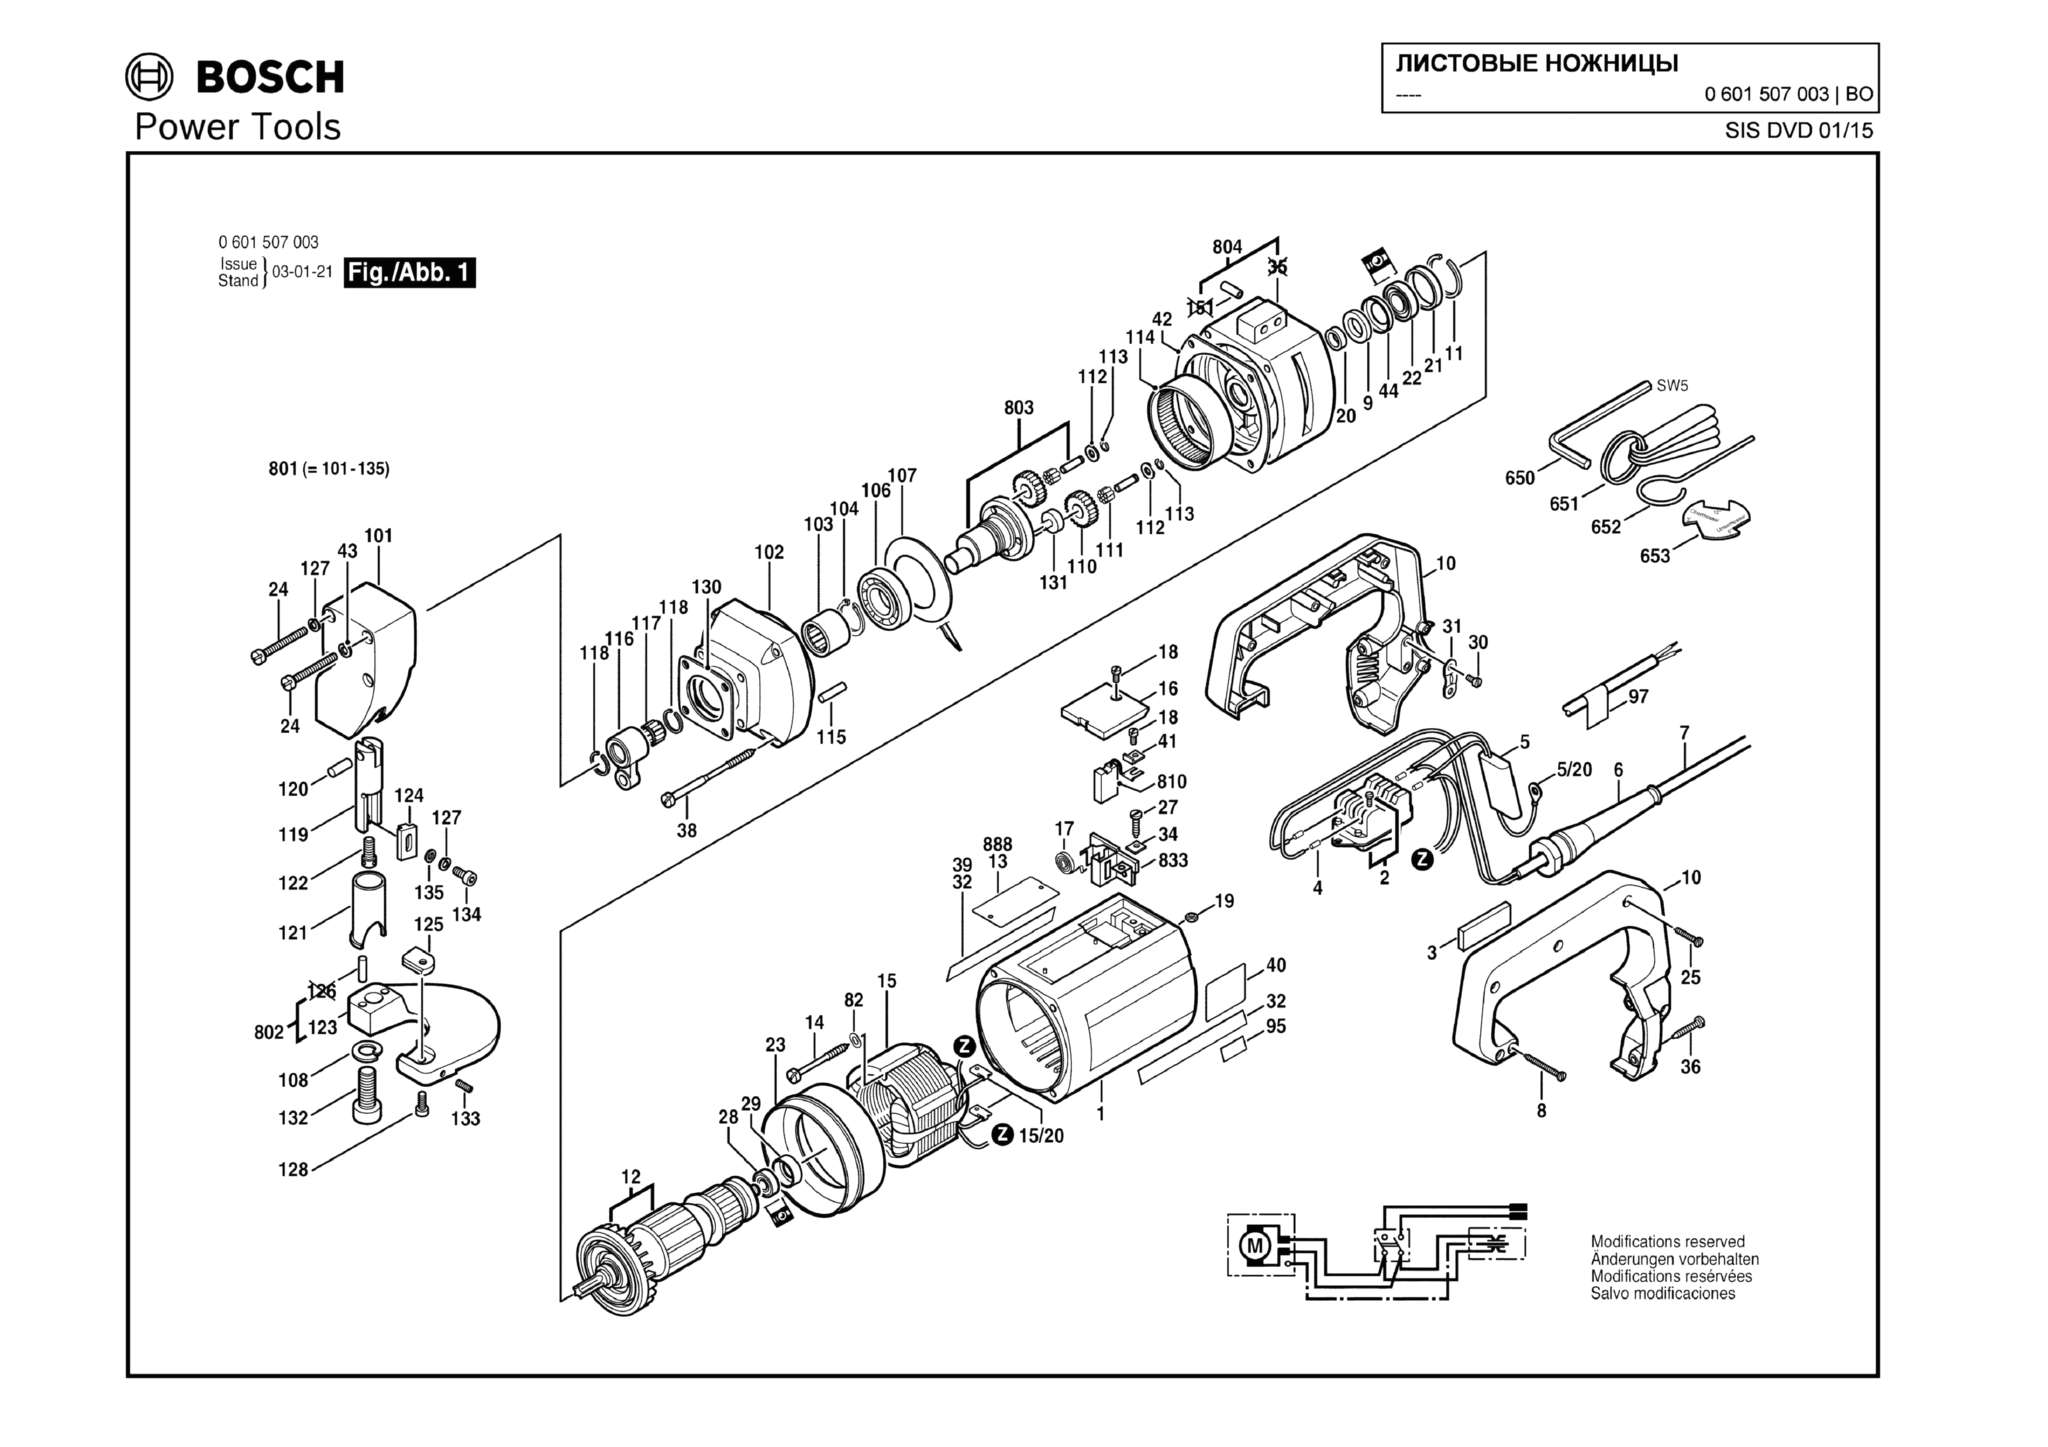 Запчасти, схема и деталировка Bosch (ТИП 0601507003)